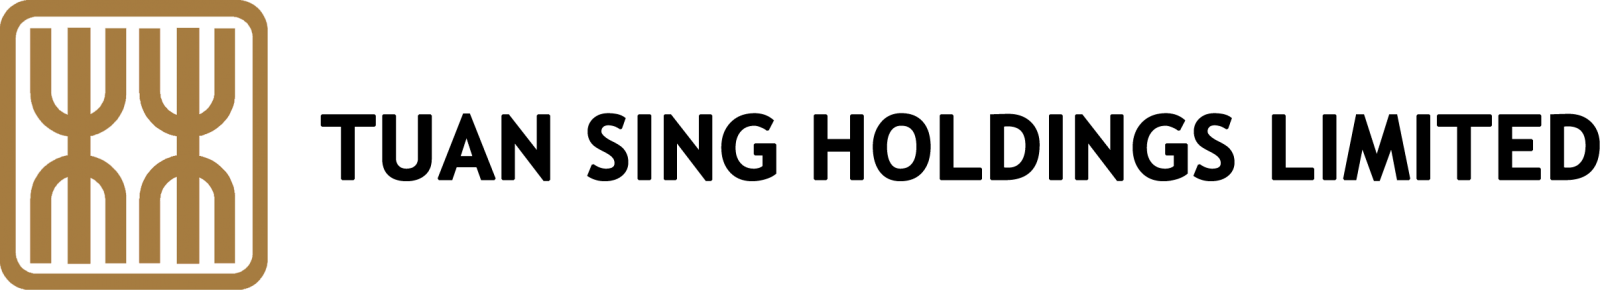 Tuan Sing Logo